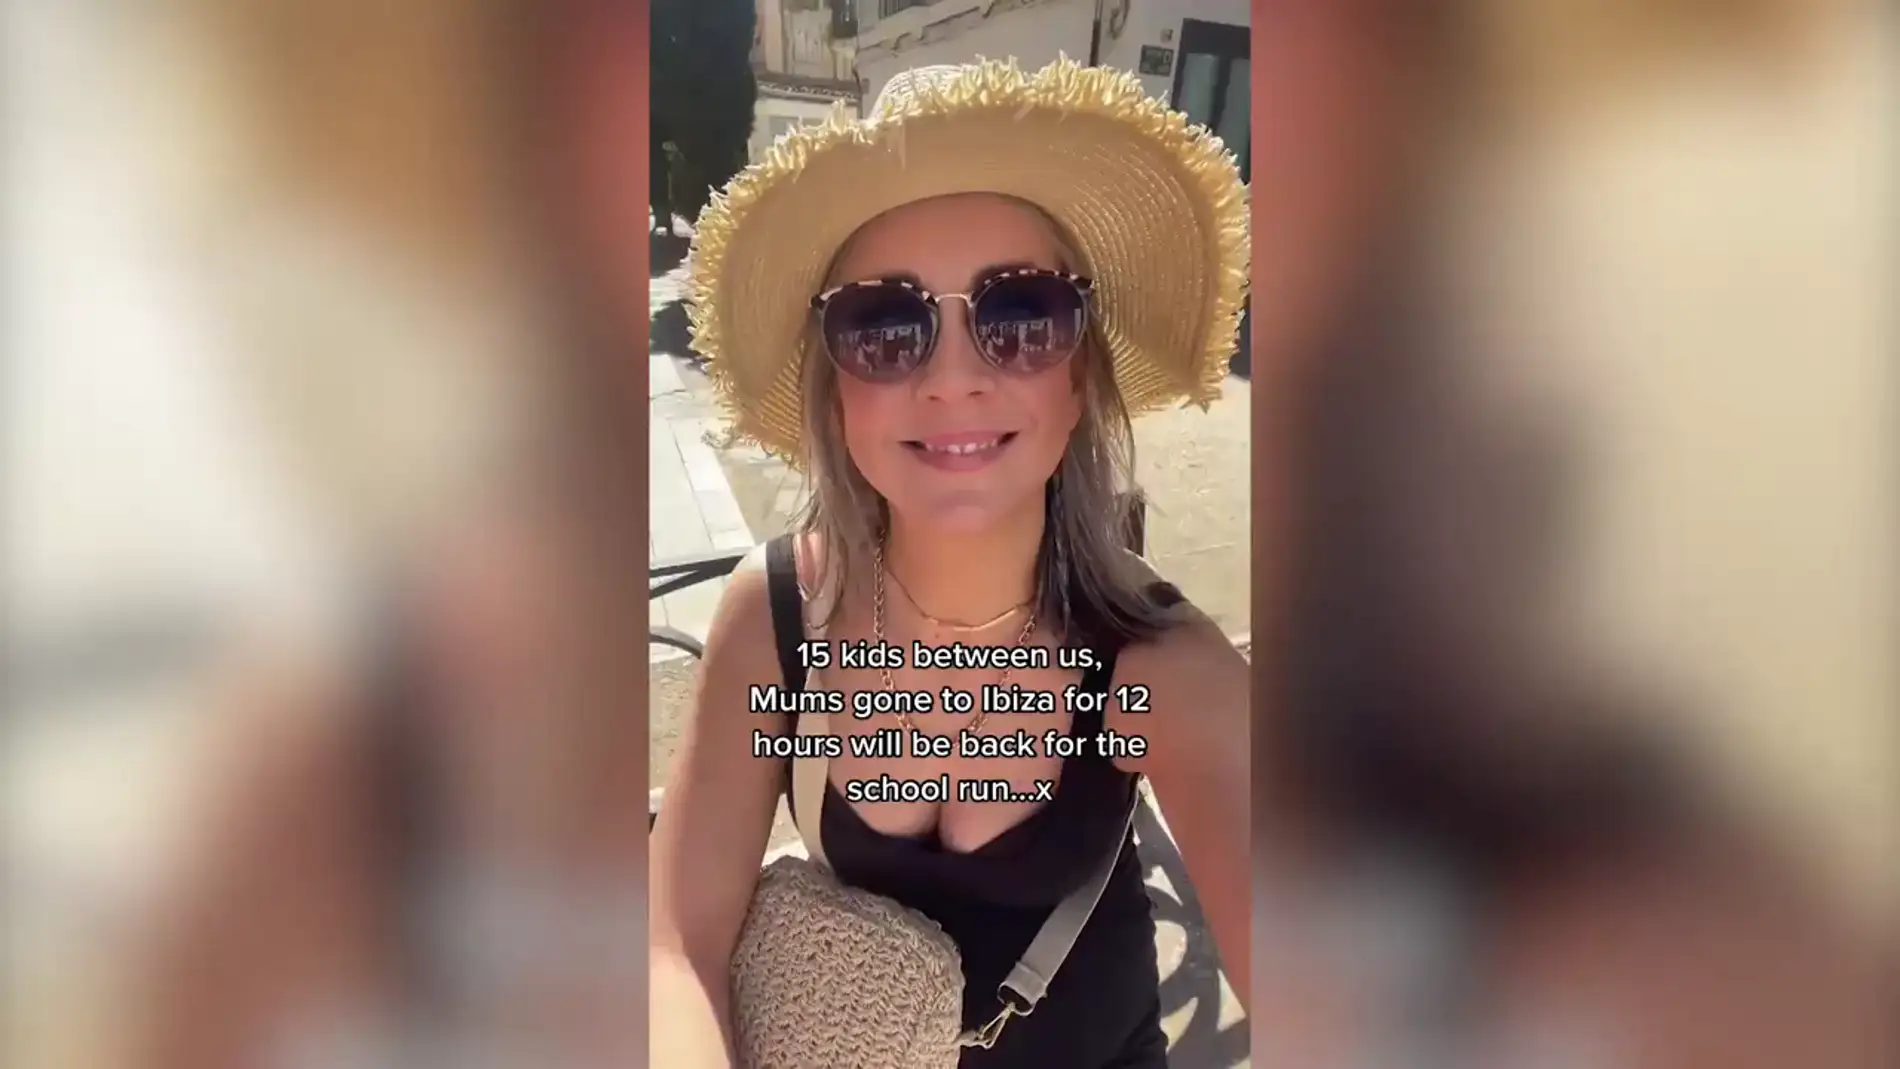 Un grupo de madres se hacen virales al viajar a Ibiza para unas vacaciones de 12 horas y llegar a tiempo para el colegio de sus hijos